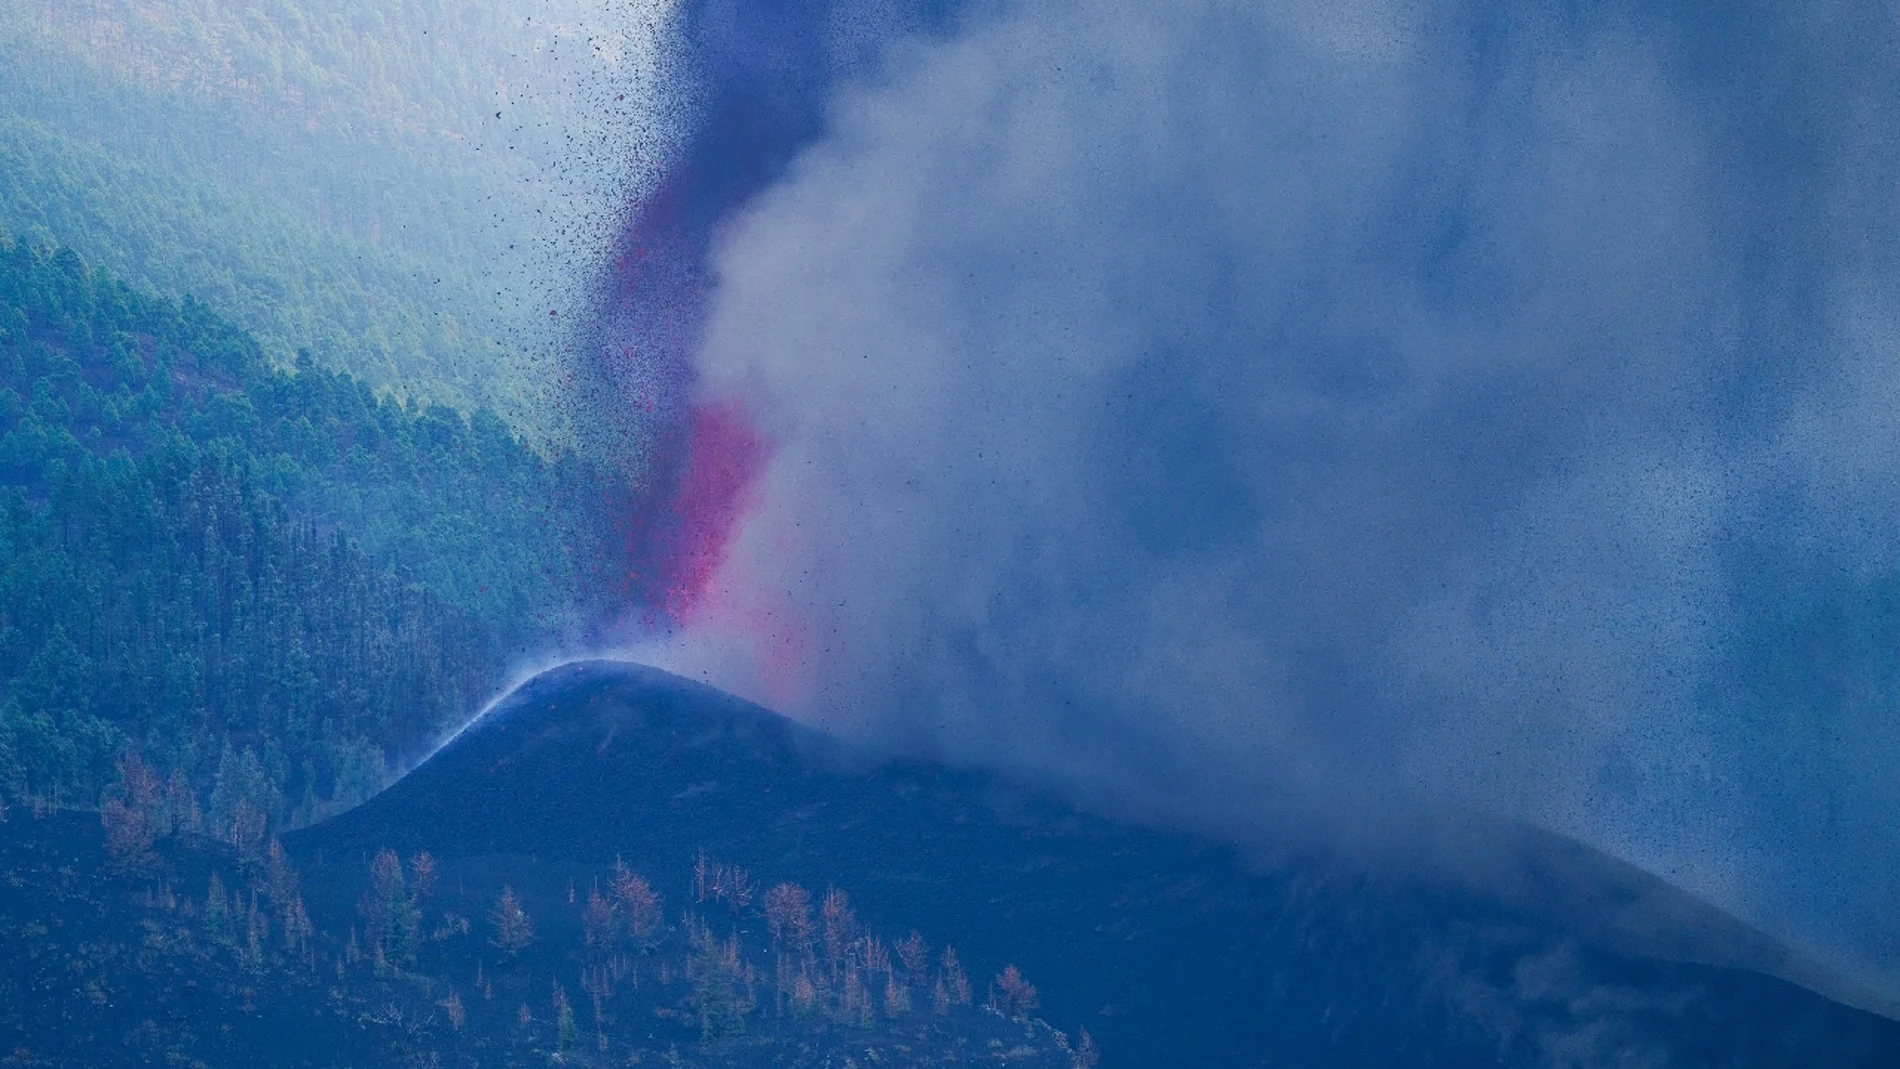 Volcán estromboliano: Qué es, tipos de erupciones, partes, cómo se forma y cómo funcionan los volcanes